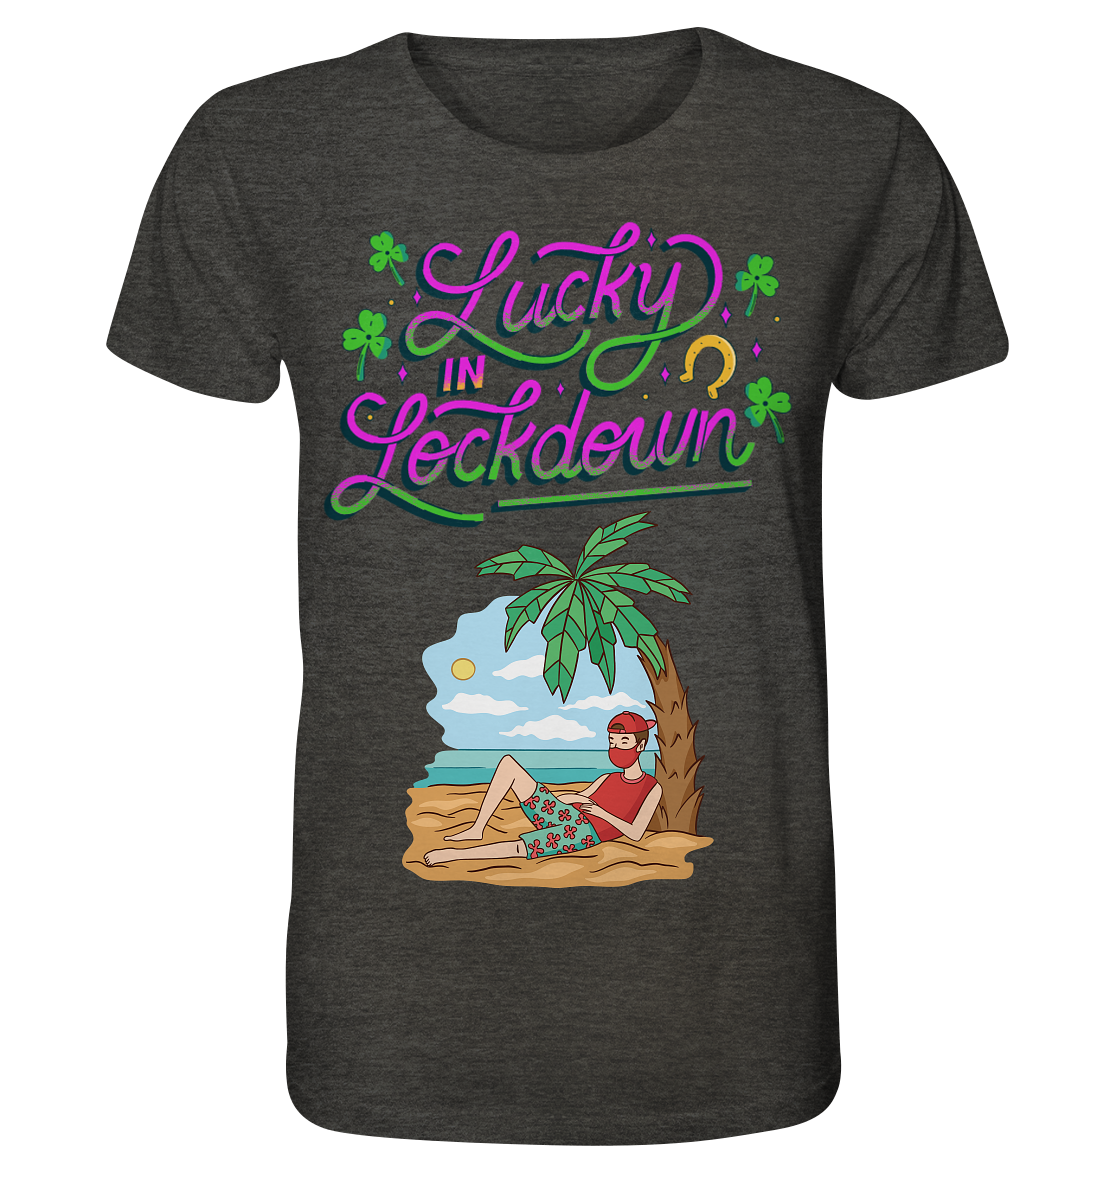 Lucky in Lockdown - Organic Shirt (meliert) - Online Kaufhaus München